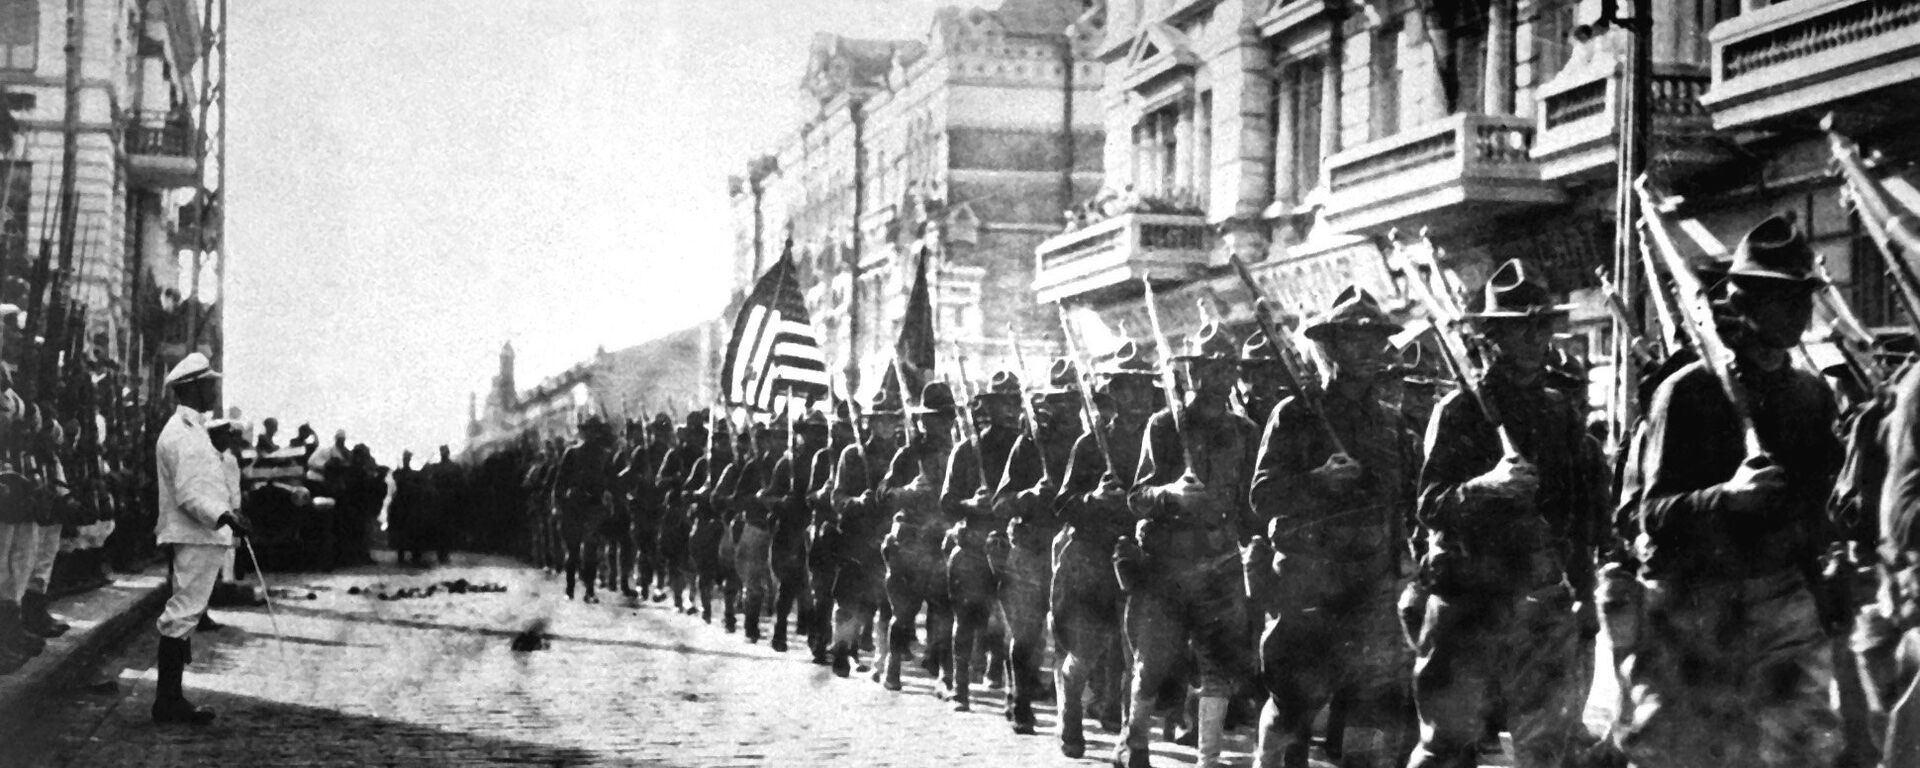 Tropas estadounidenses en Vladivostok - Sputnik Mundo, 1920, 15.08.2018